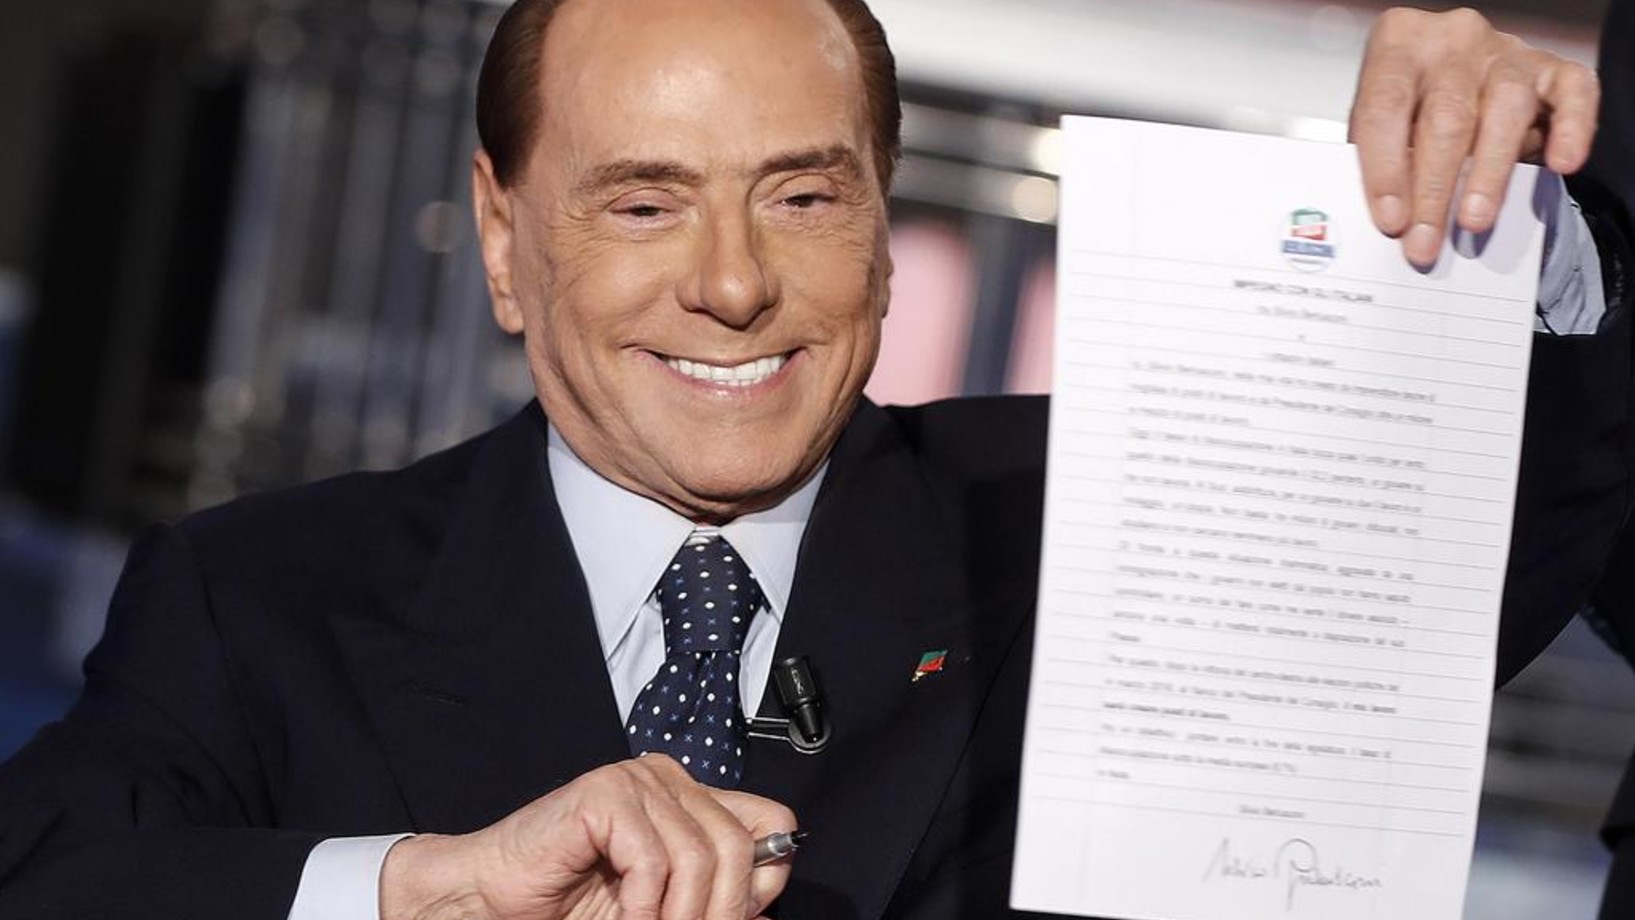 Am Fernsehen zeigt Berlusconi einen von ihm unterschriebenen „Pakt mit Volk“, in dem er verspricht, die italienische Arbeitslosenquote unter den eursopäischen Durchschnitt zu senken. (Foto: Keystone/Ansa/AP/Riccardo Antimiani)